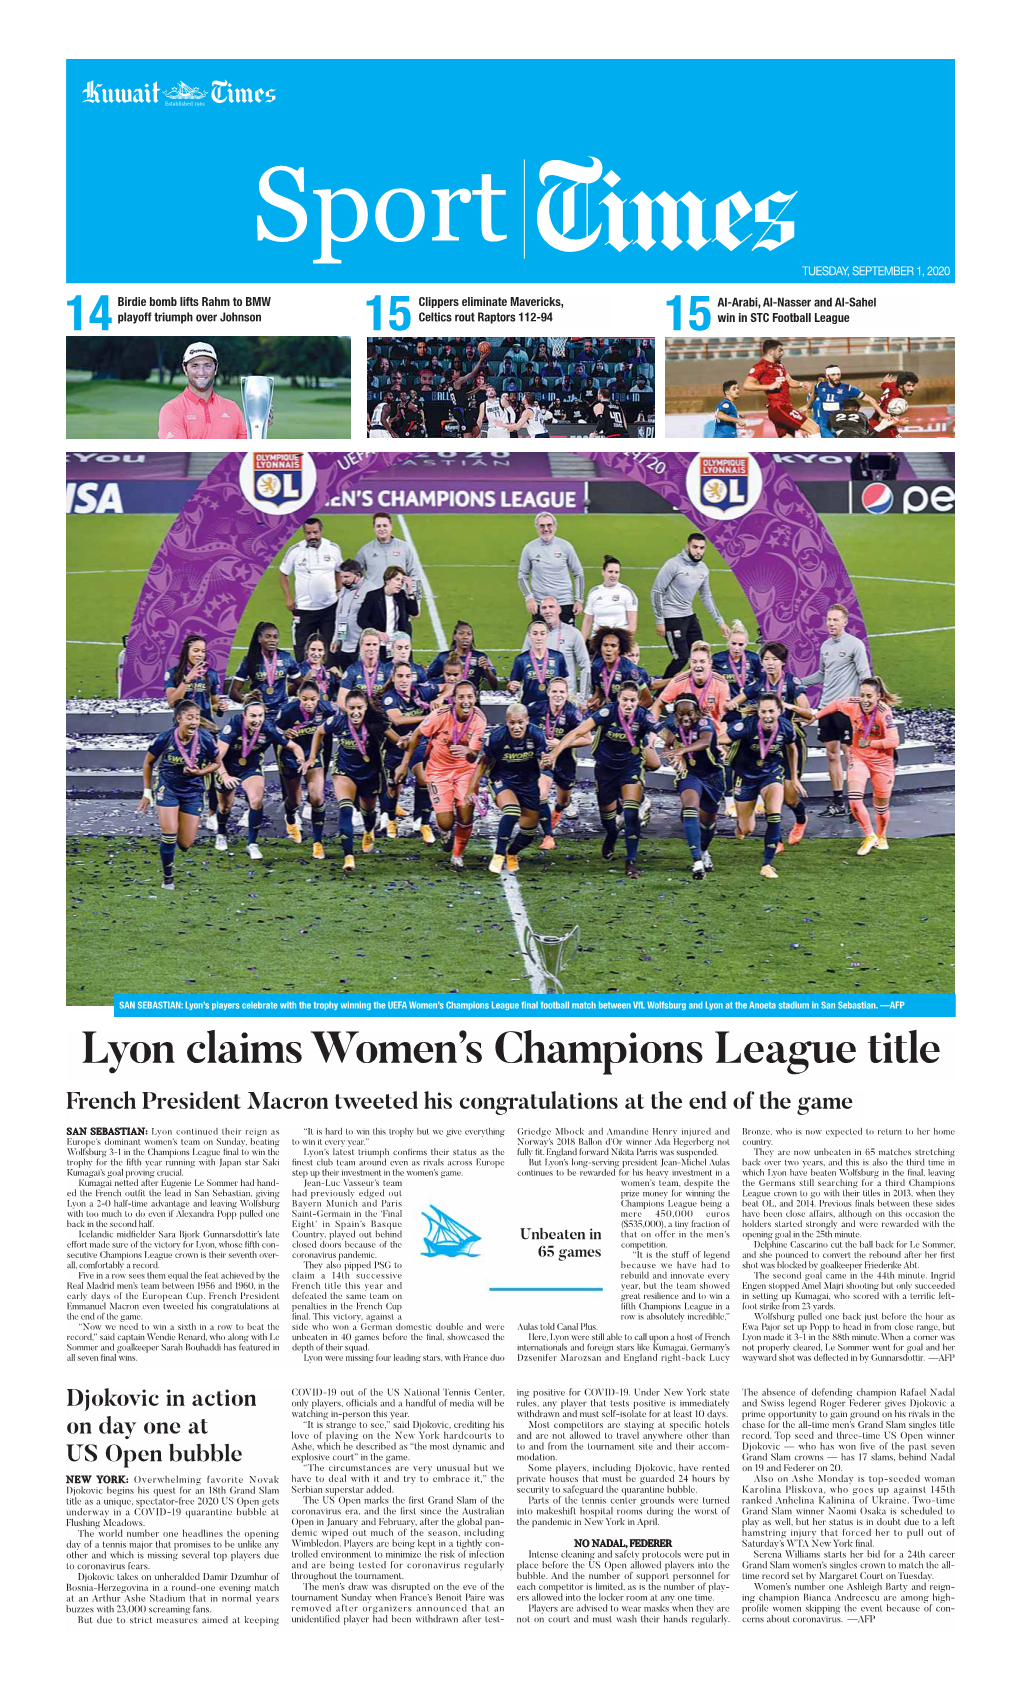 Lyon Claims Women's Champions League Title